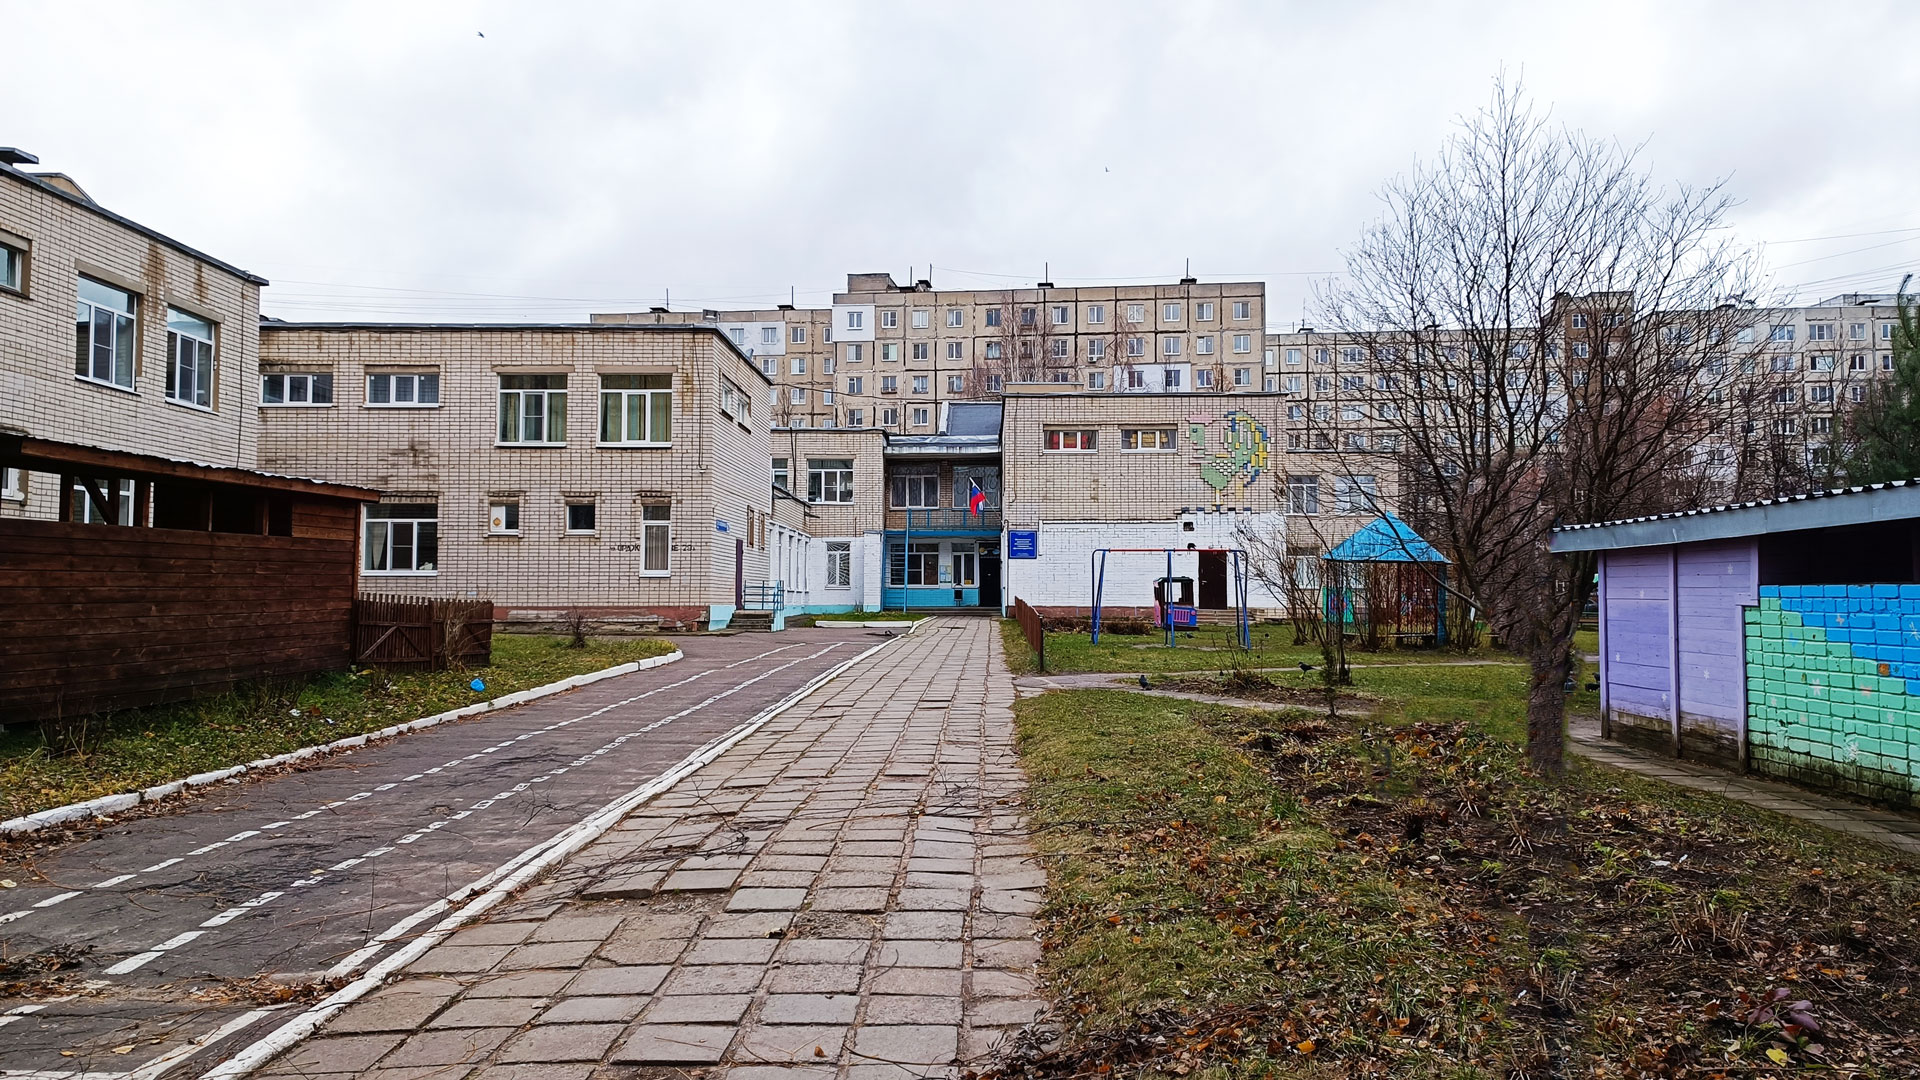 Детский сад 101 Ярославль: общий вид здания.